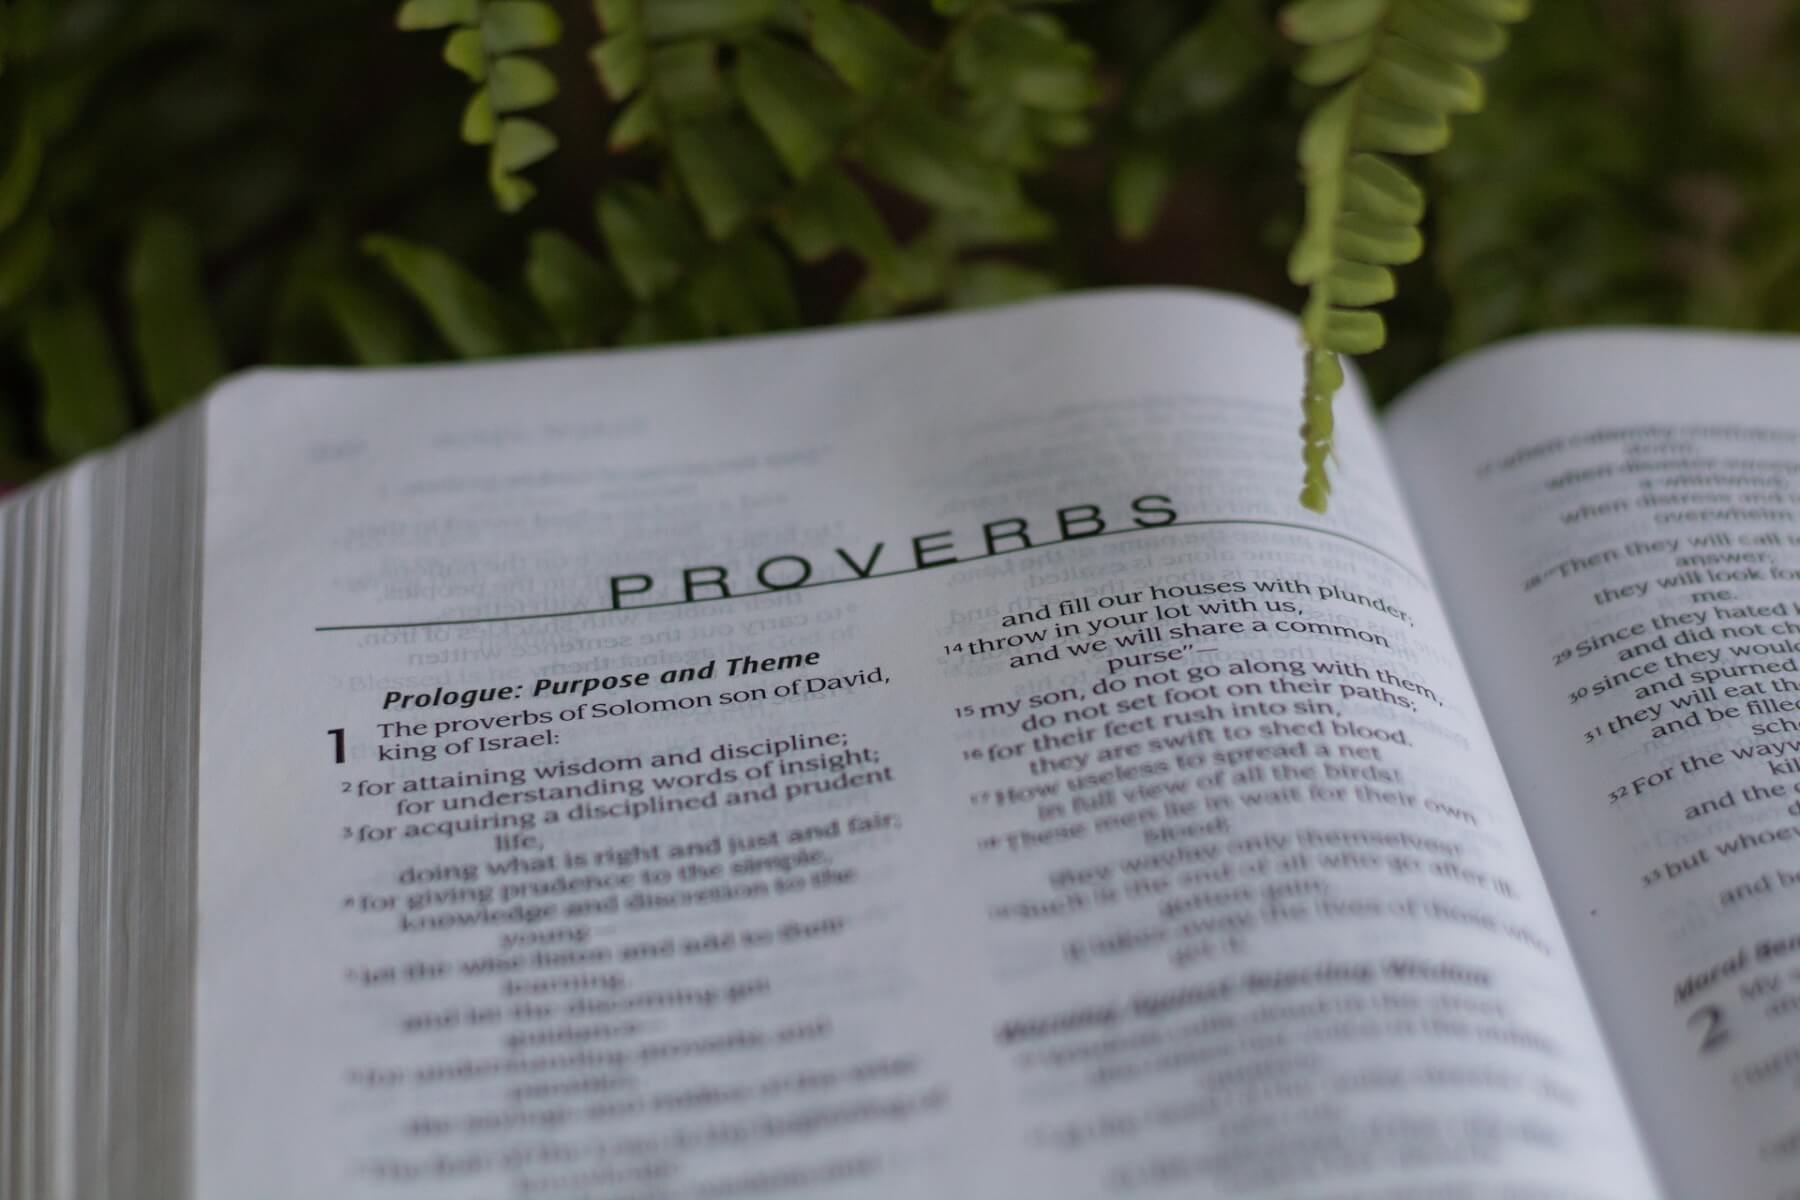 proverbs wisdom literature